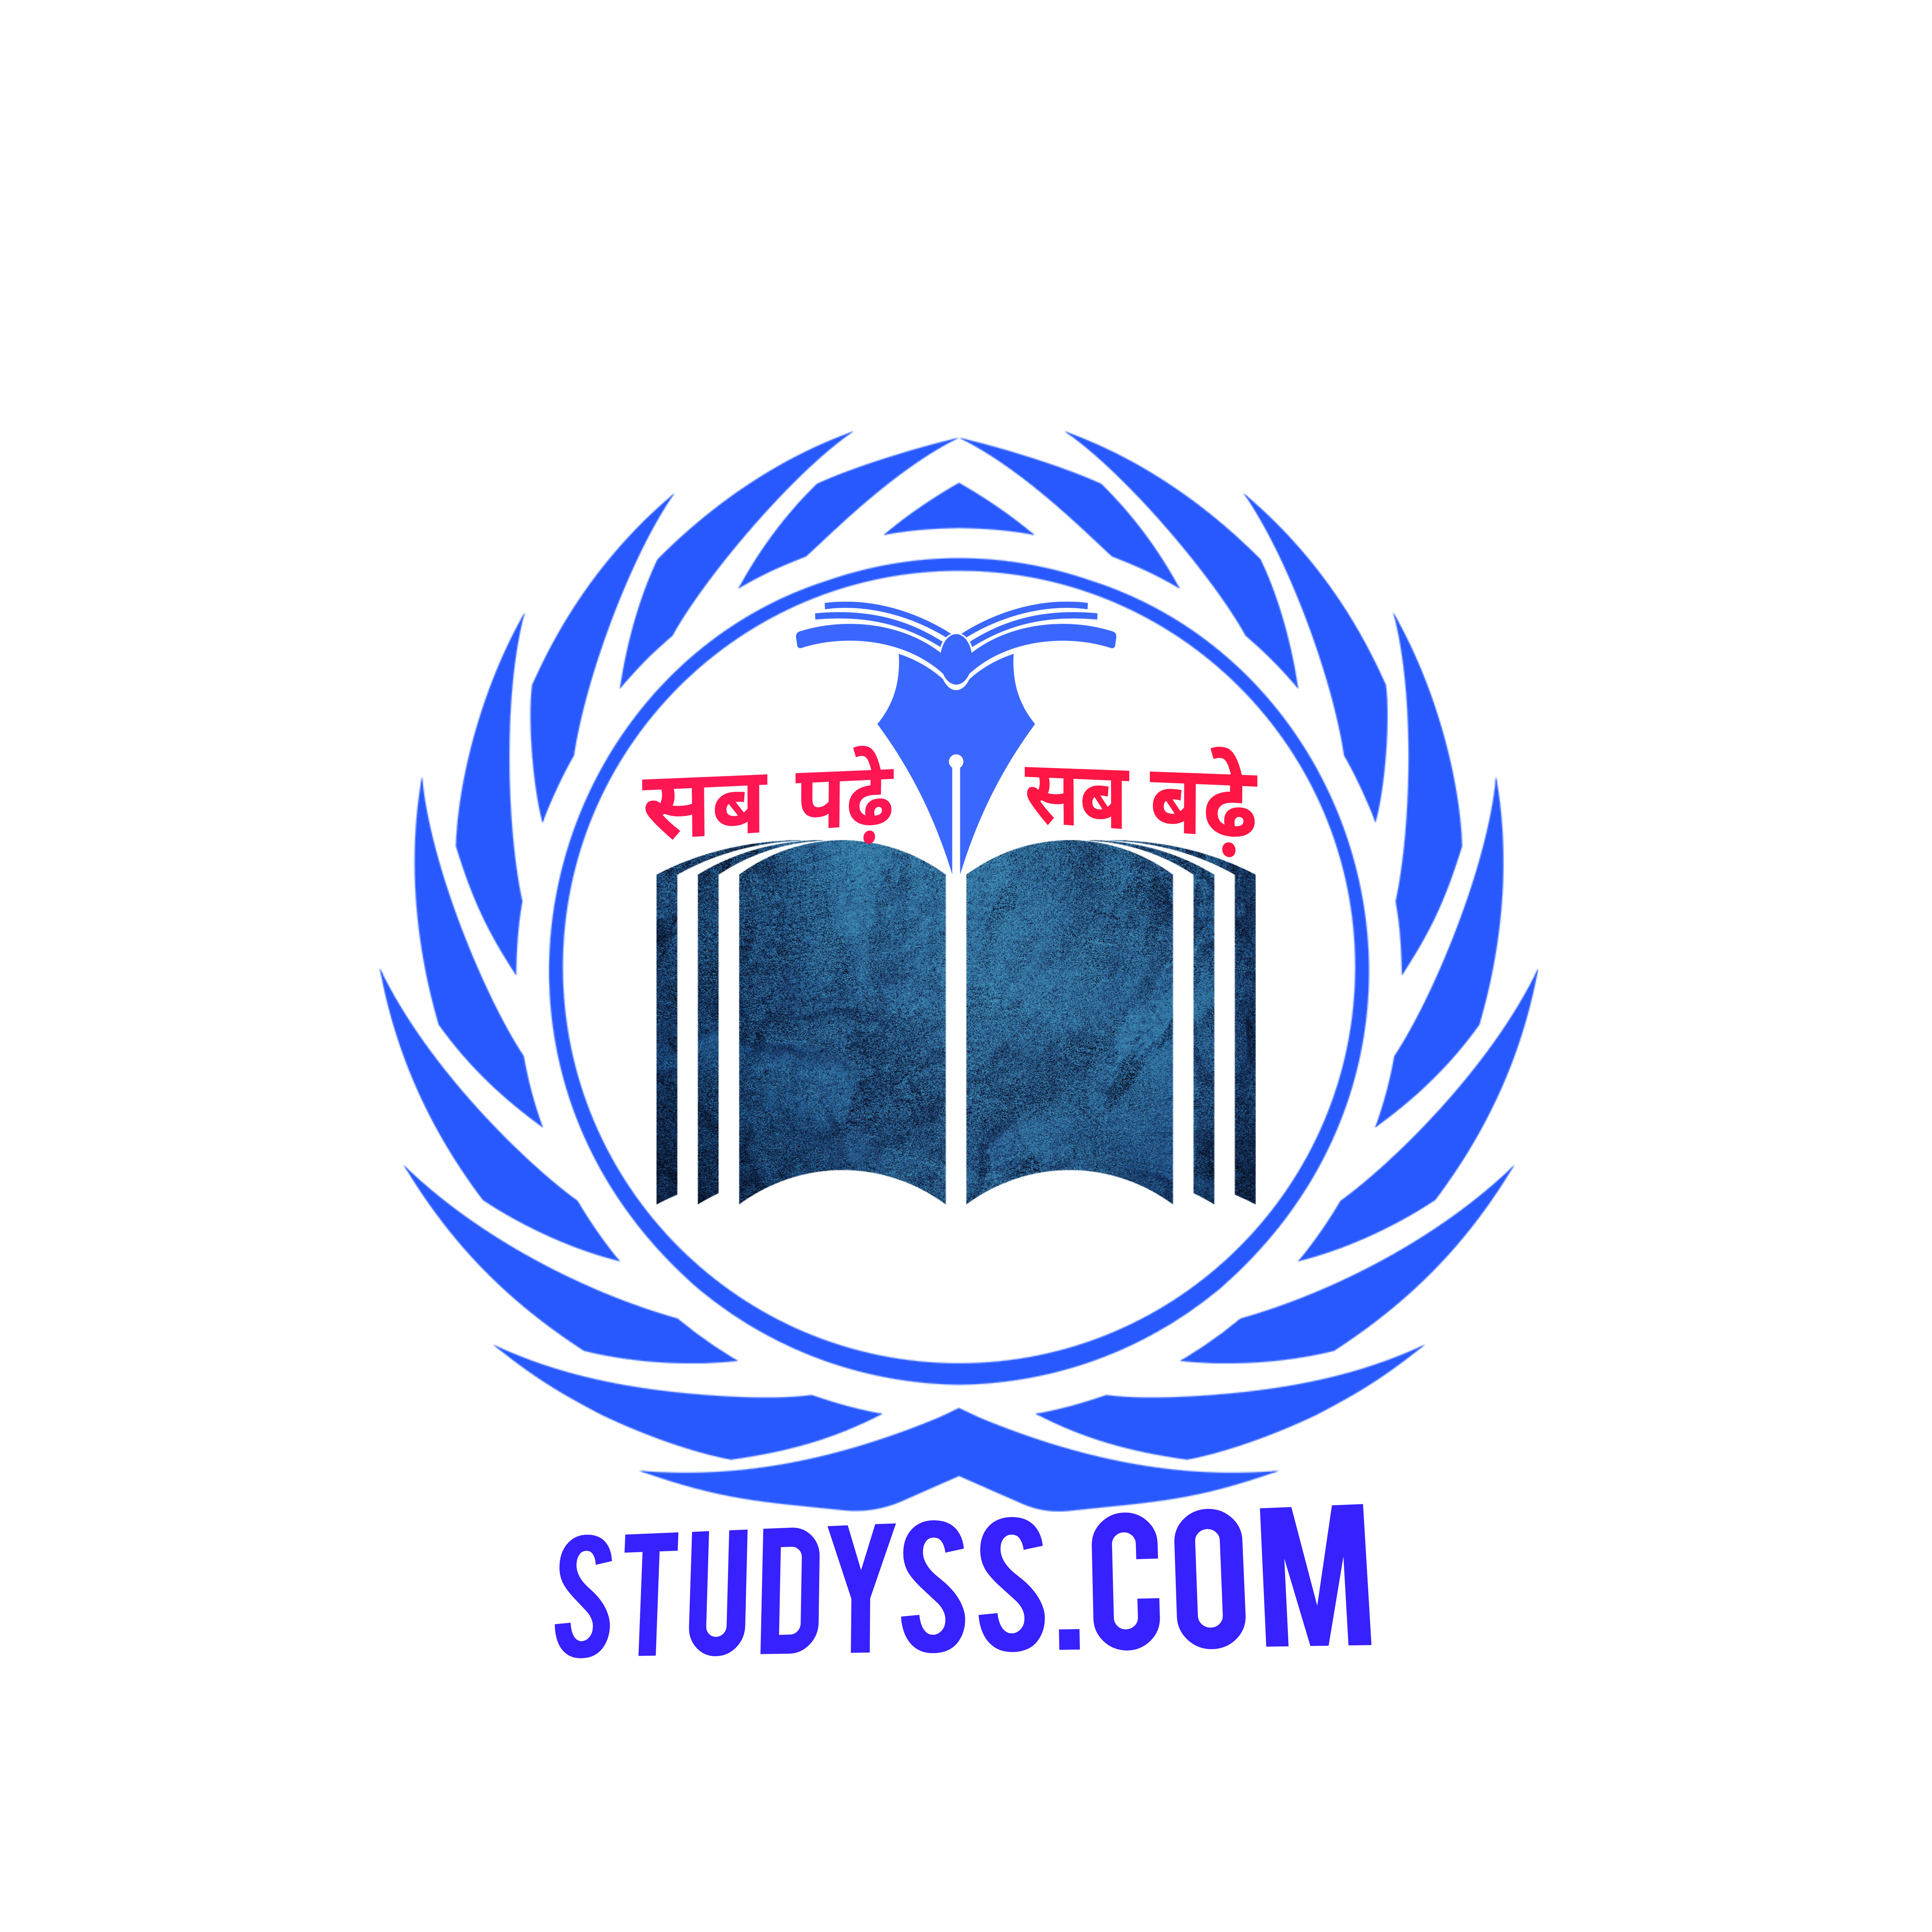 studyss.com